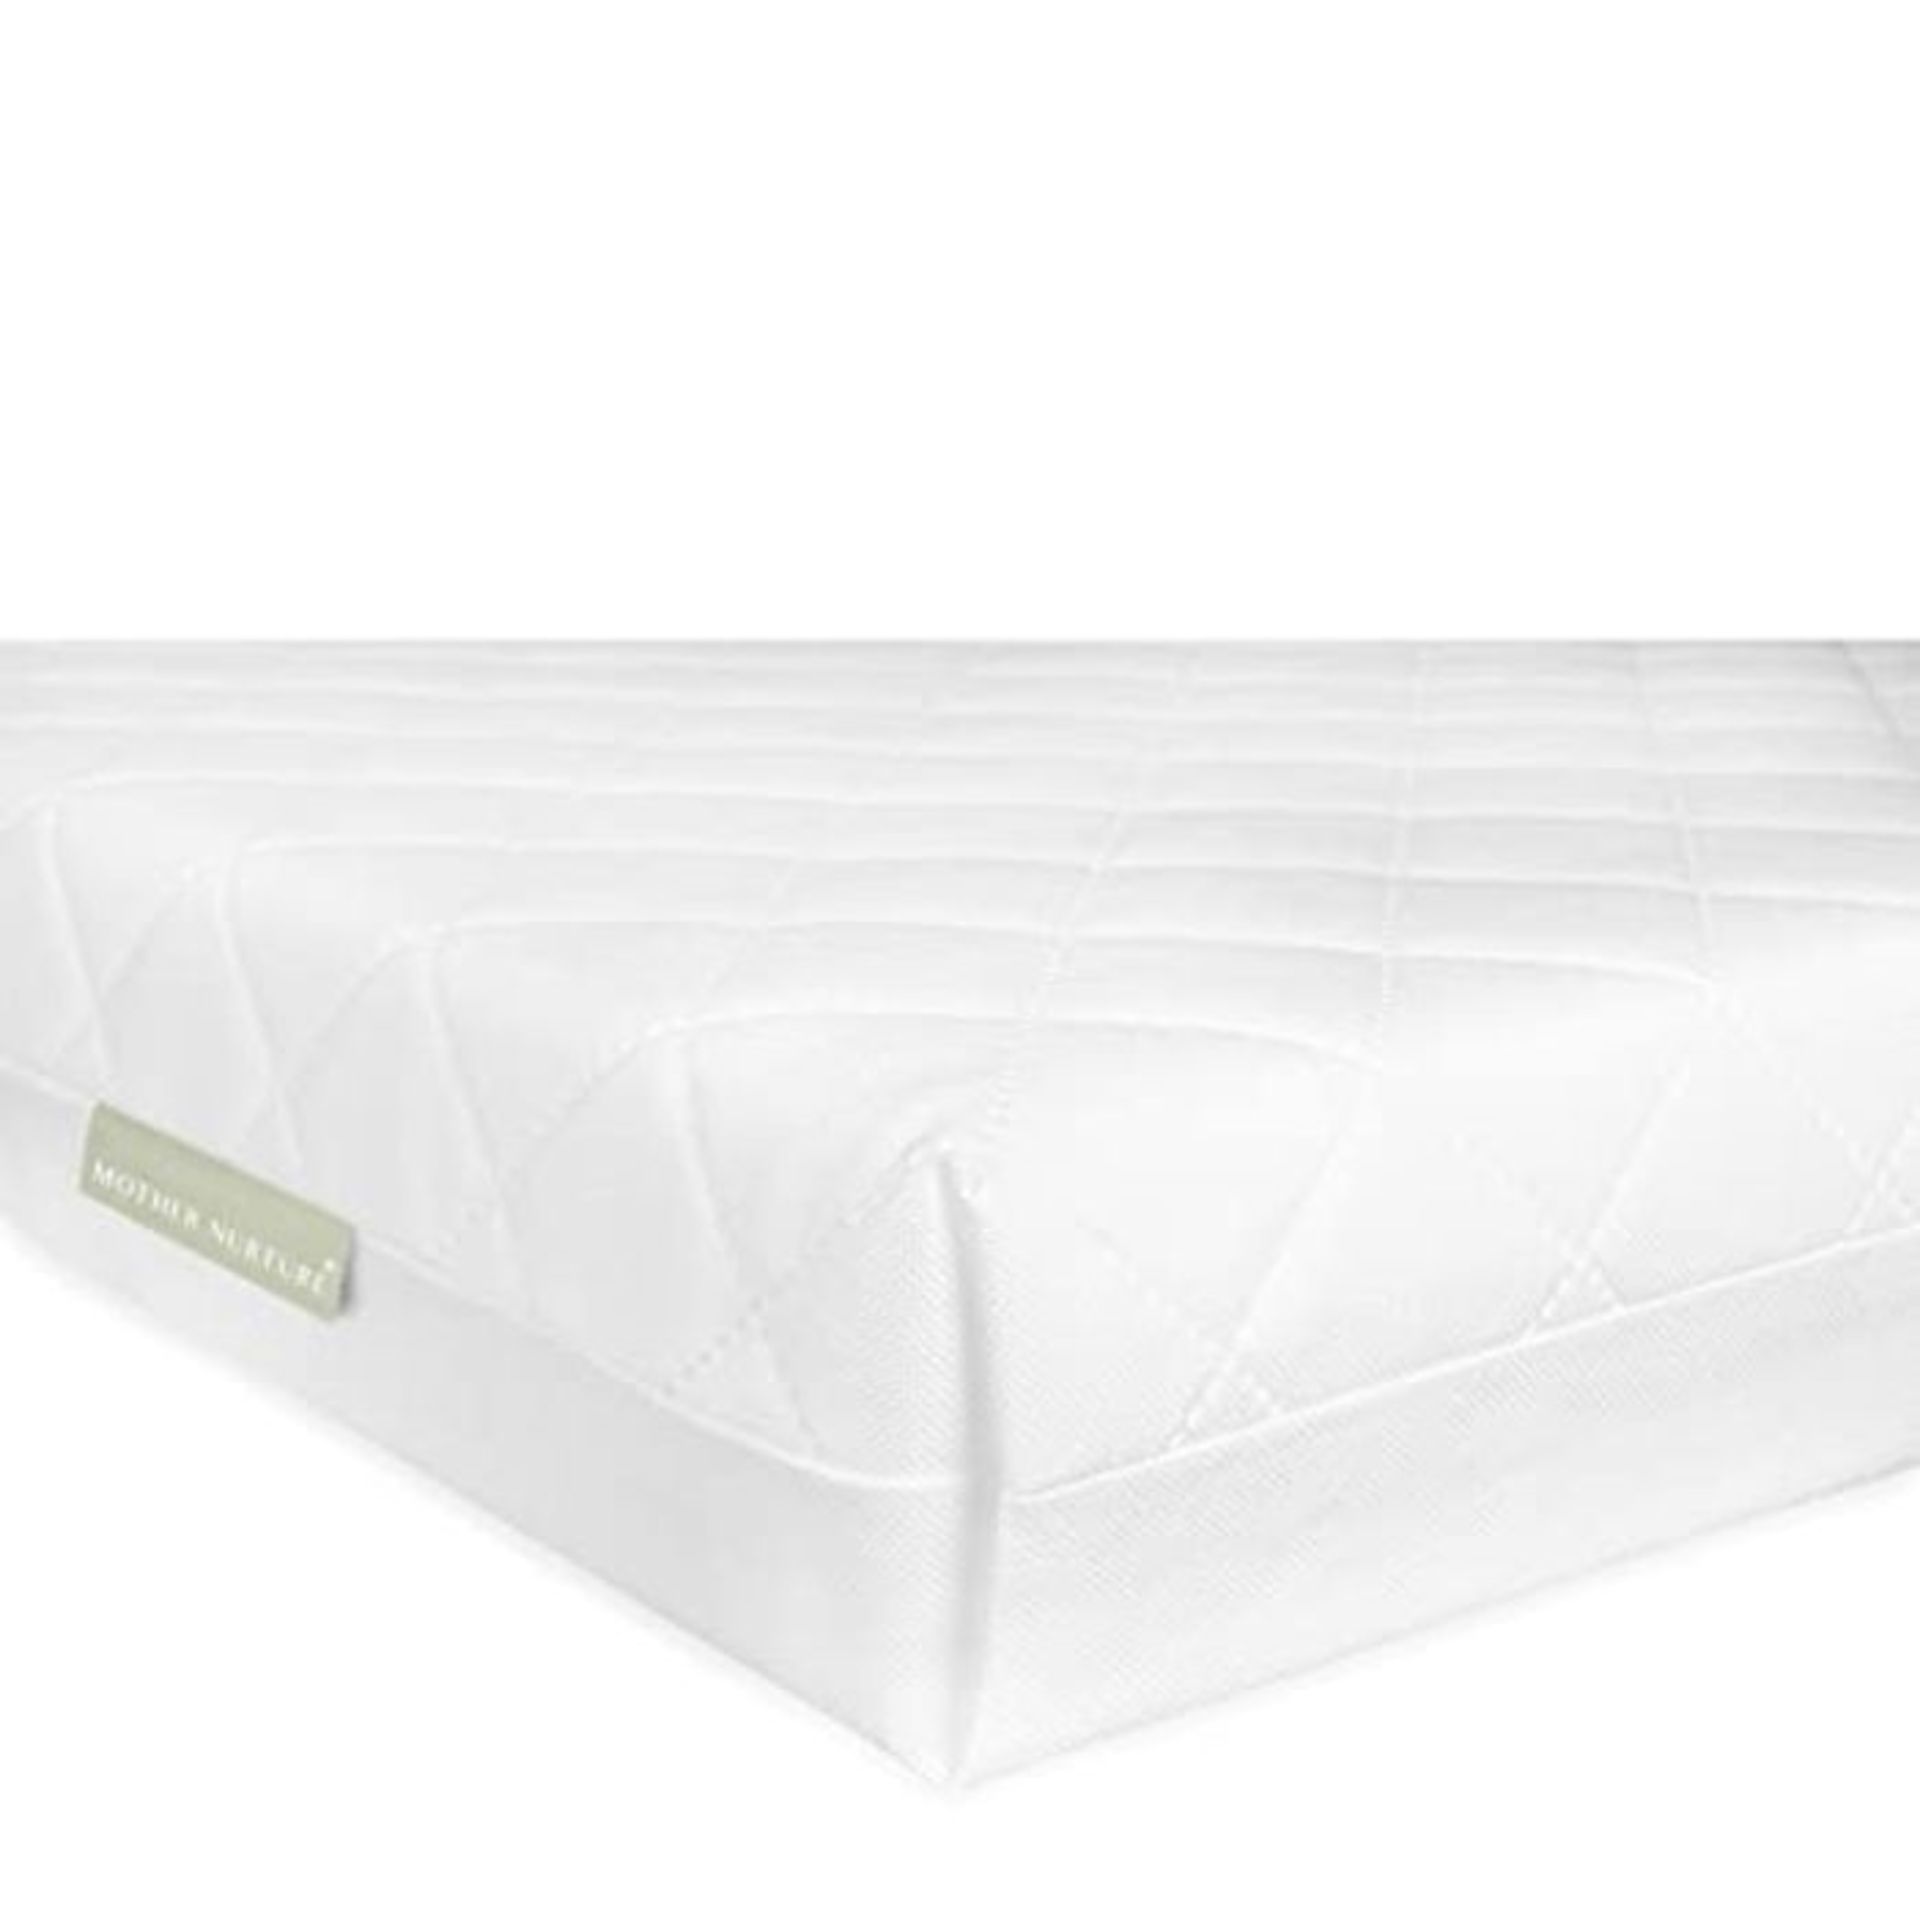 MOTHER NURTURE Classic Eco Fibre Cot Bed Mattress 140 x 70 x 10cm